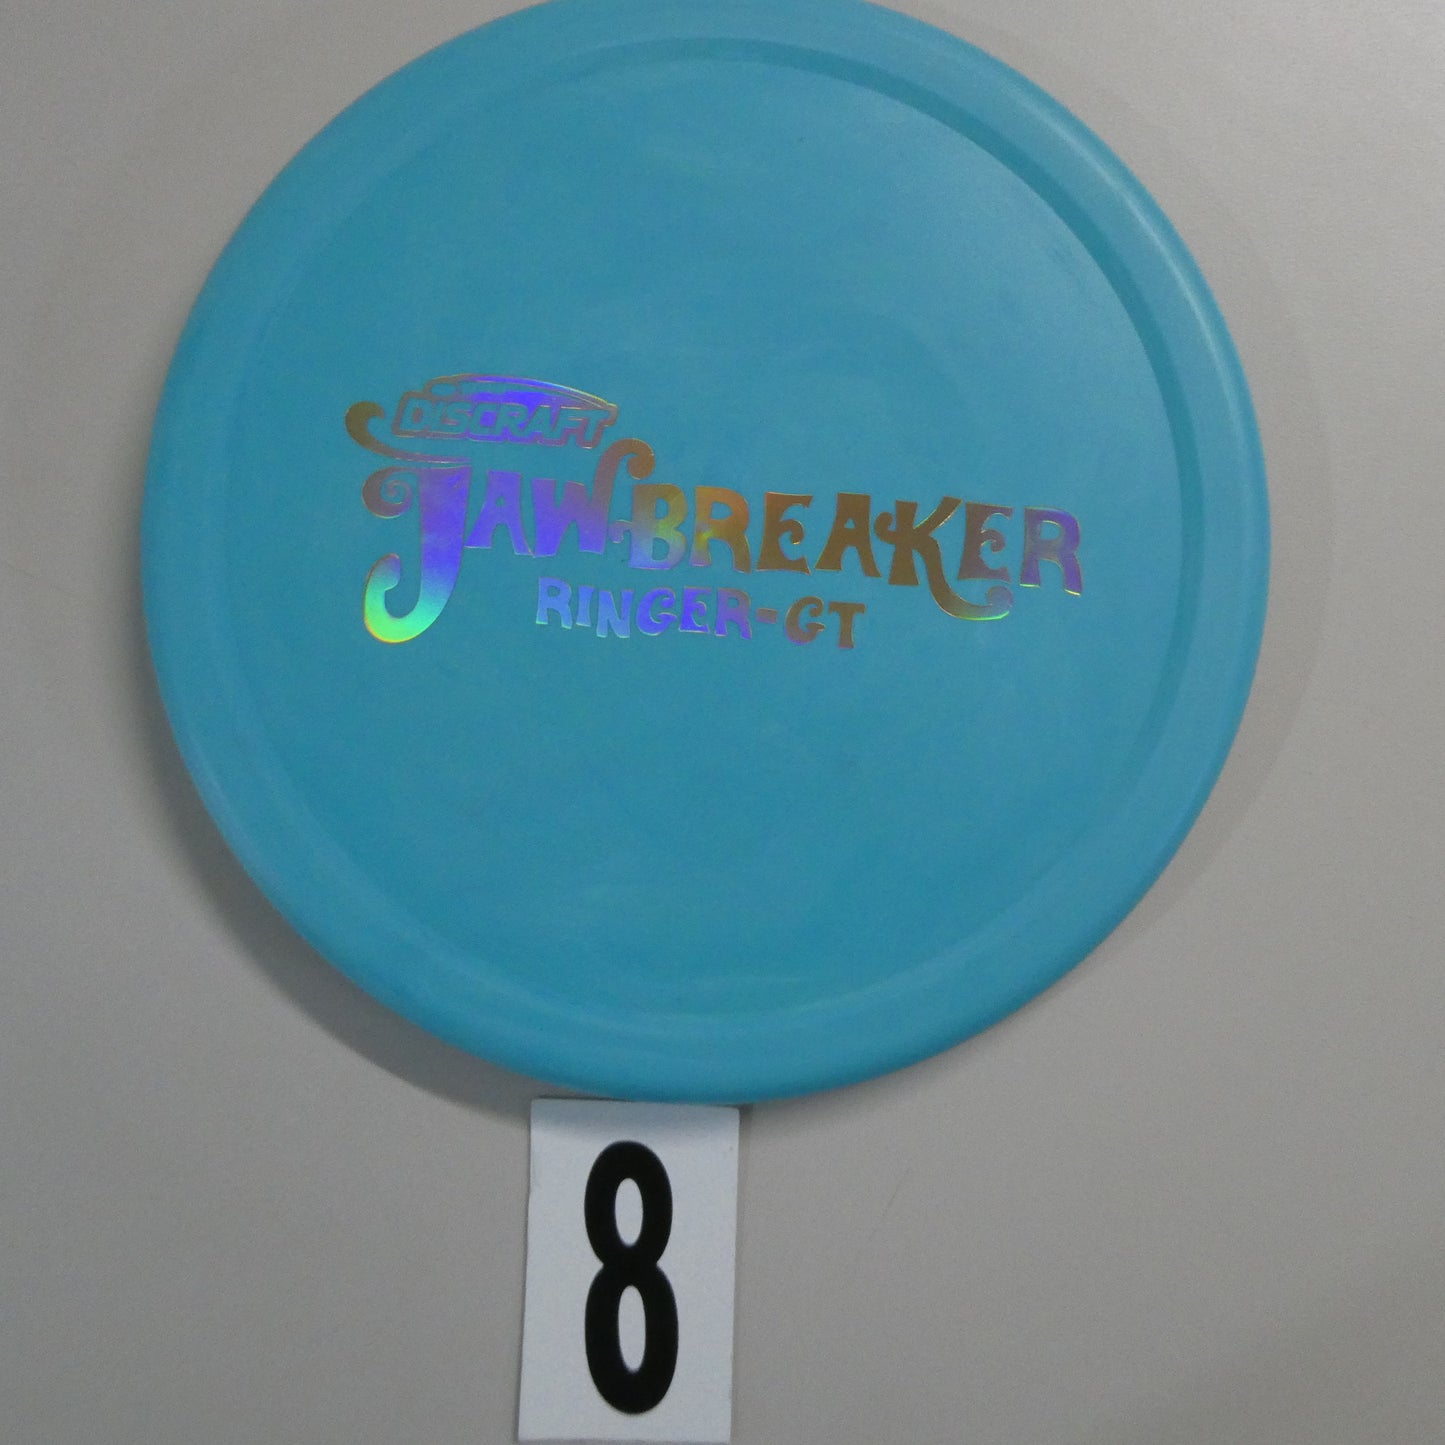 Jawbreaker Ringer-GT